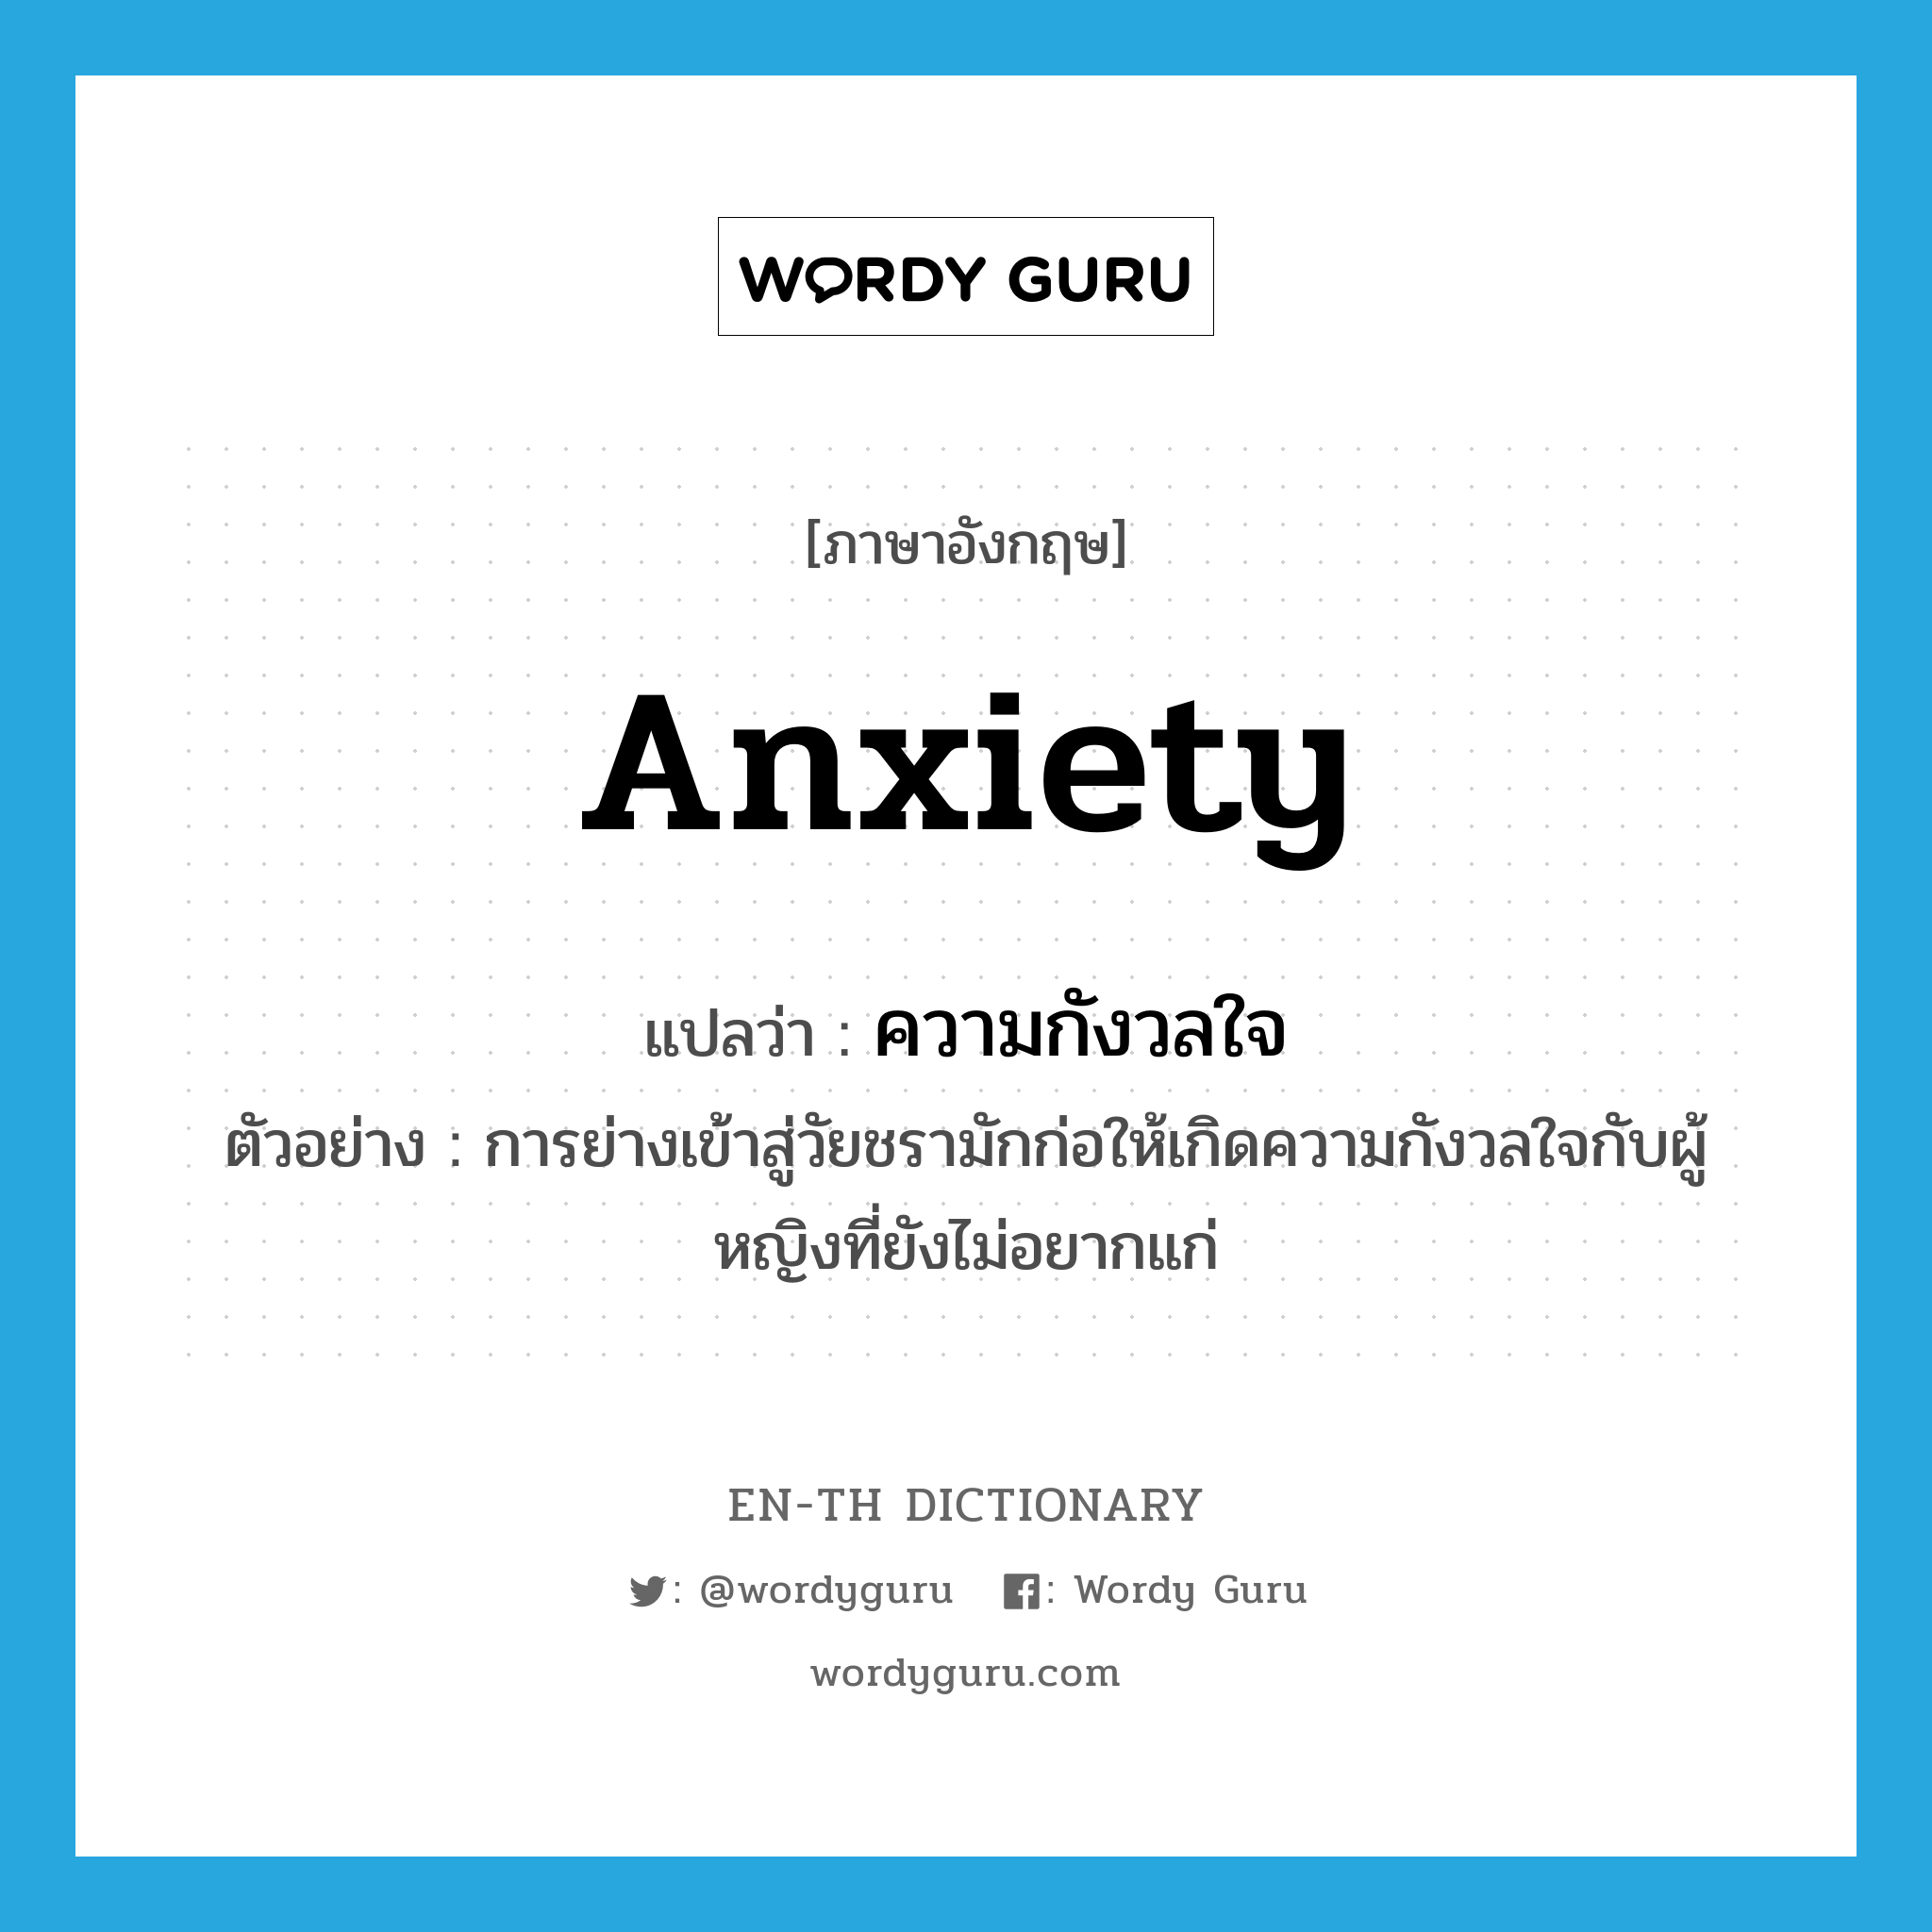 ความกังวลใจ ภาษาอังกฤษ?, คำศัพท์ภาษาอังกฤษ ความกังวลใจ แปลว่า anxiety ประเภท N ตัวอย่าง การย่างเข้าสู่วัยชรามักก่อให้เกิดความกังวลใจกับผู้หญิงที่ยังไม่อยากแก่ หมวด N